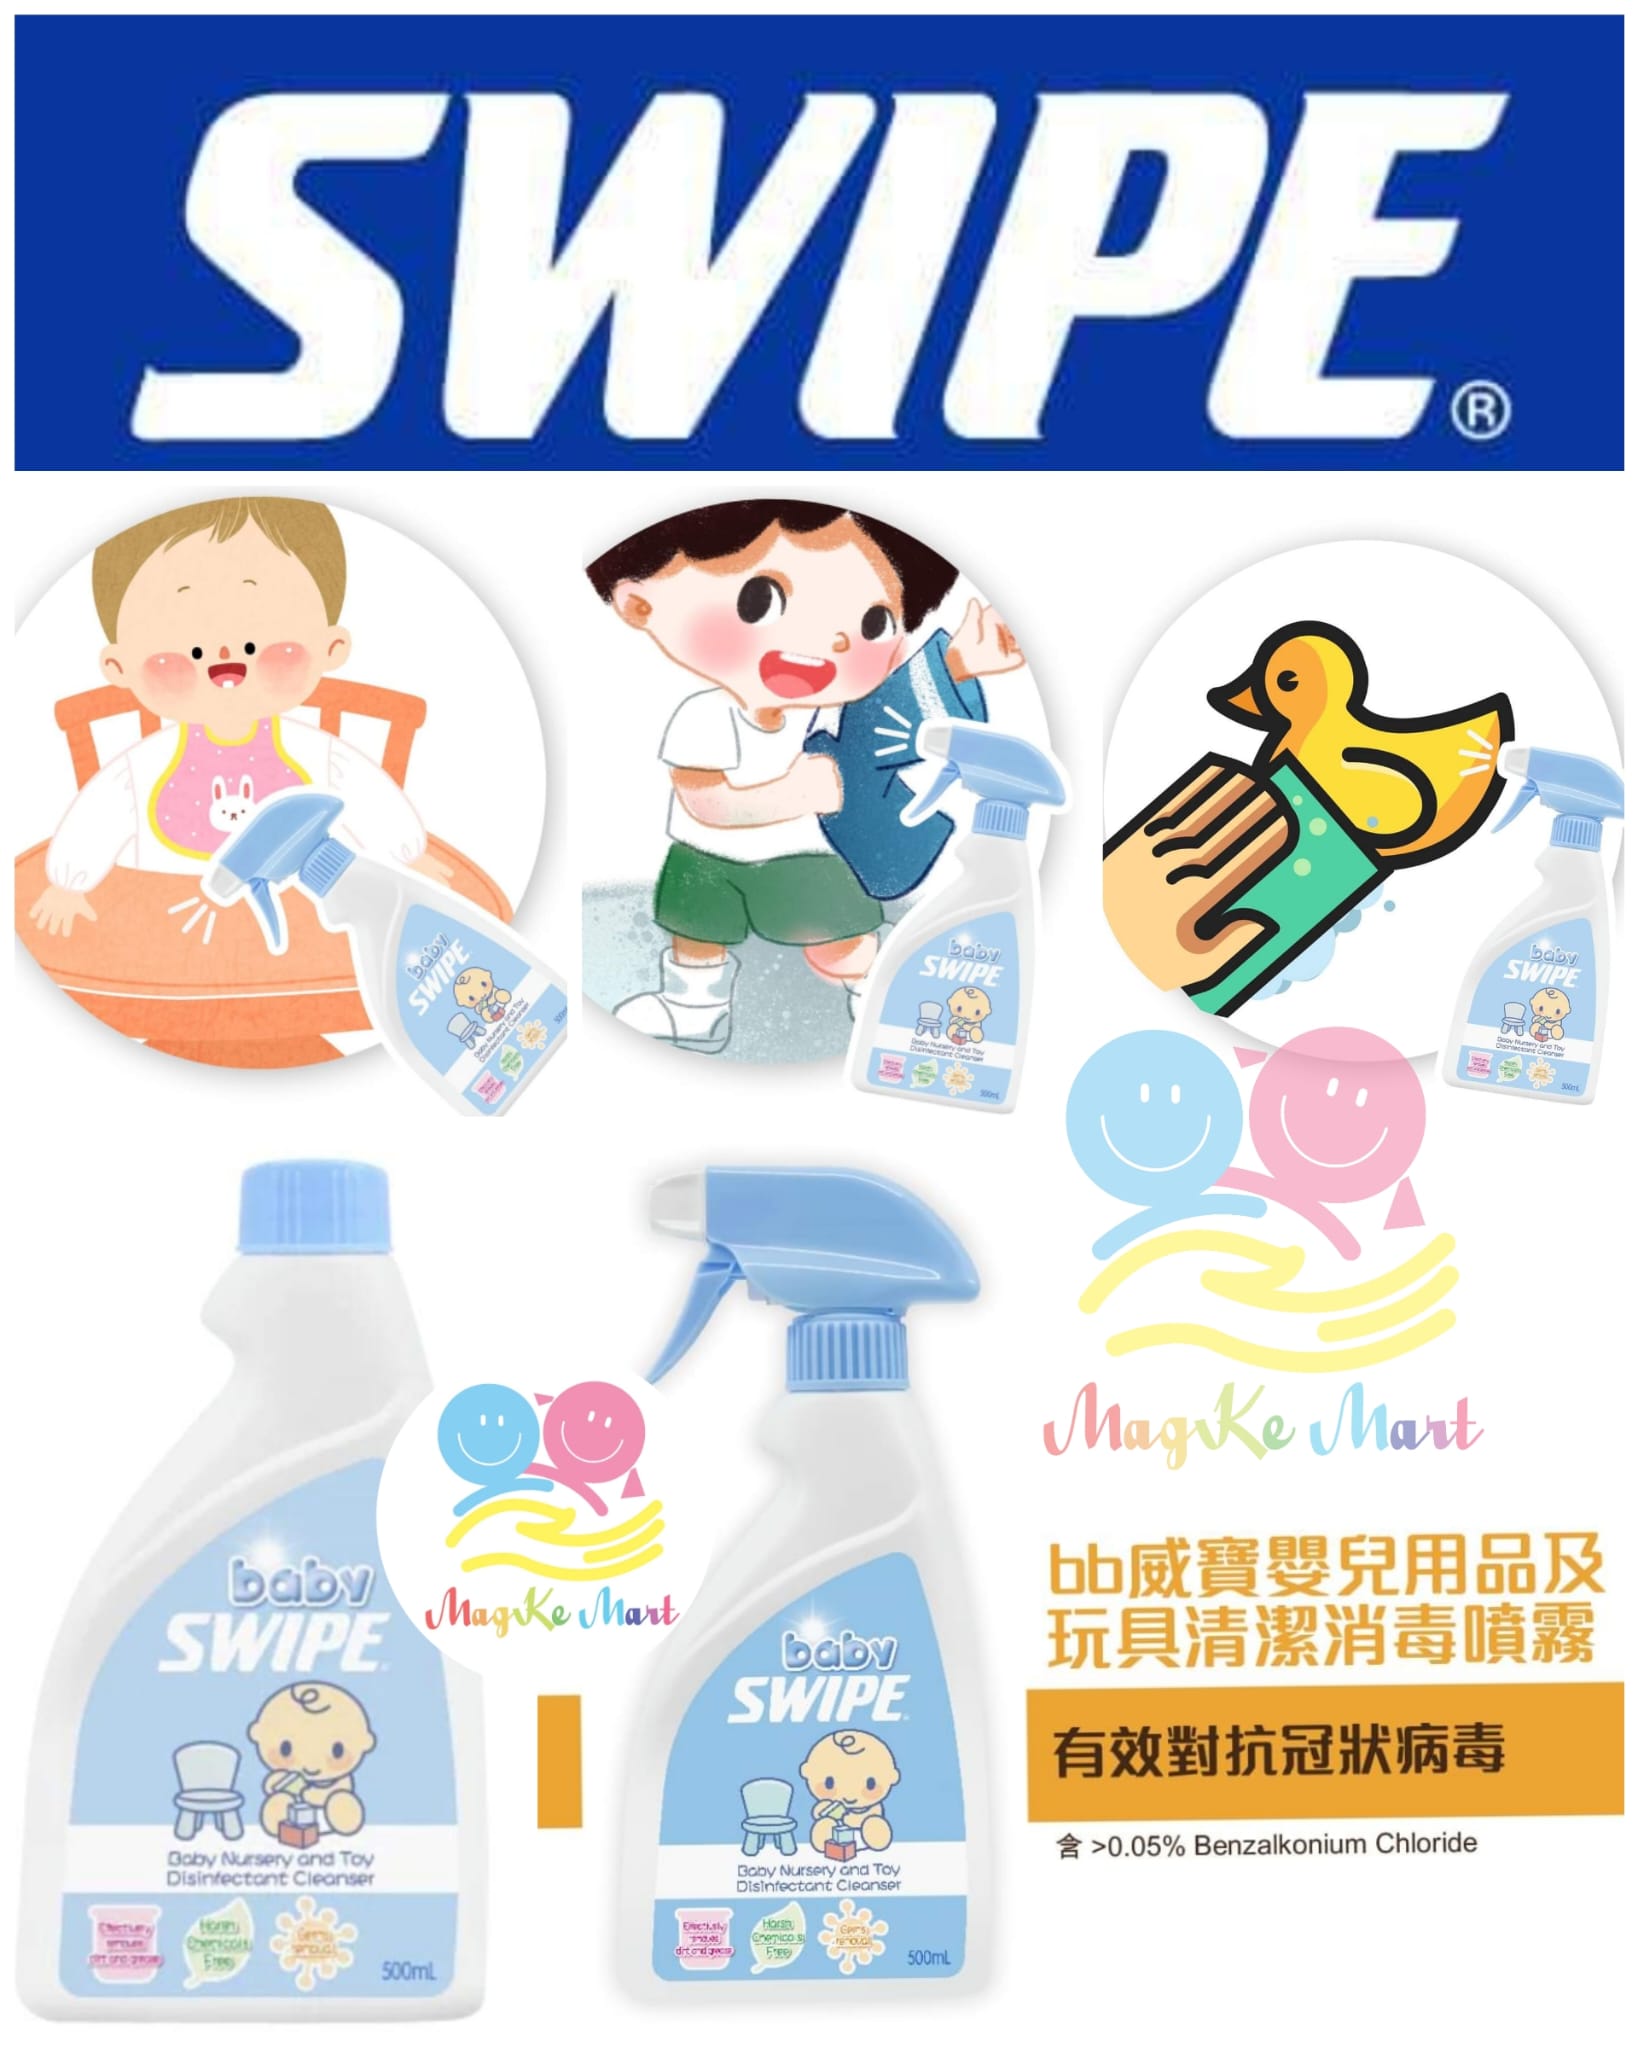 Baby Swipe BB威寶嬰兒用品及玩具清洗消毒噴霧 500ml (B) 補充裝